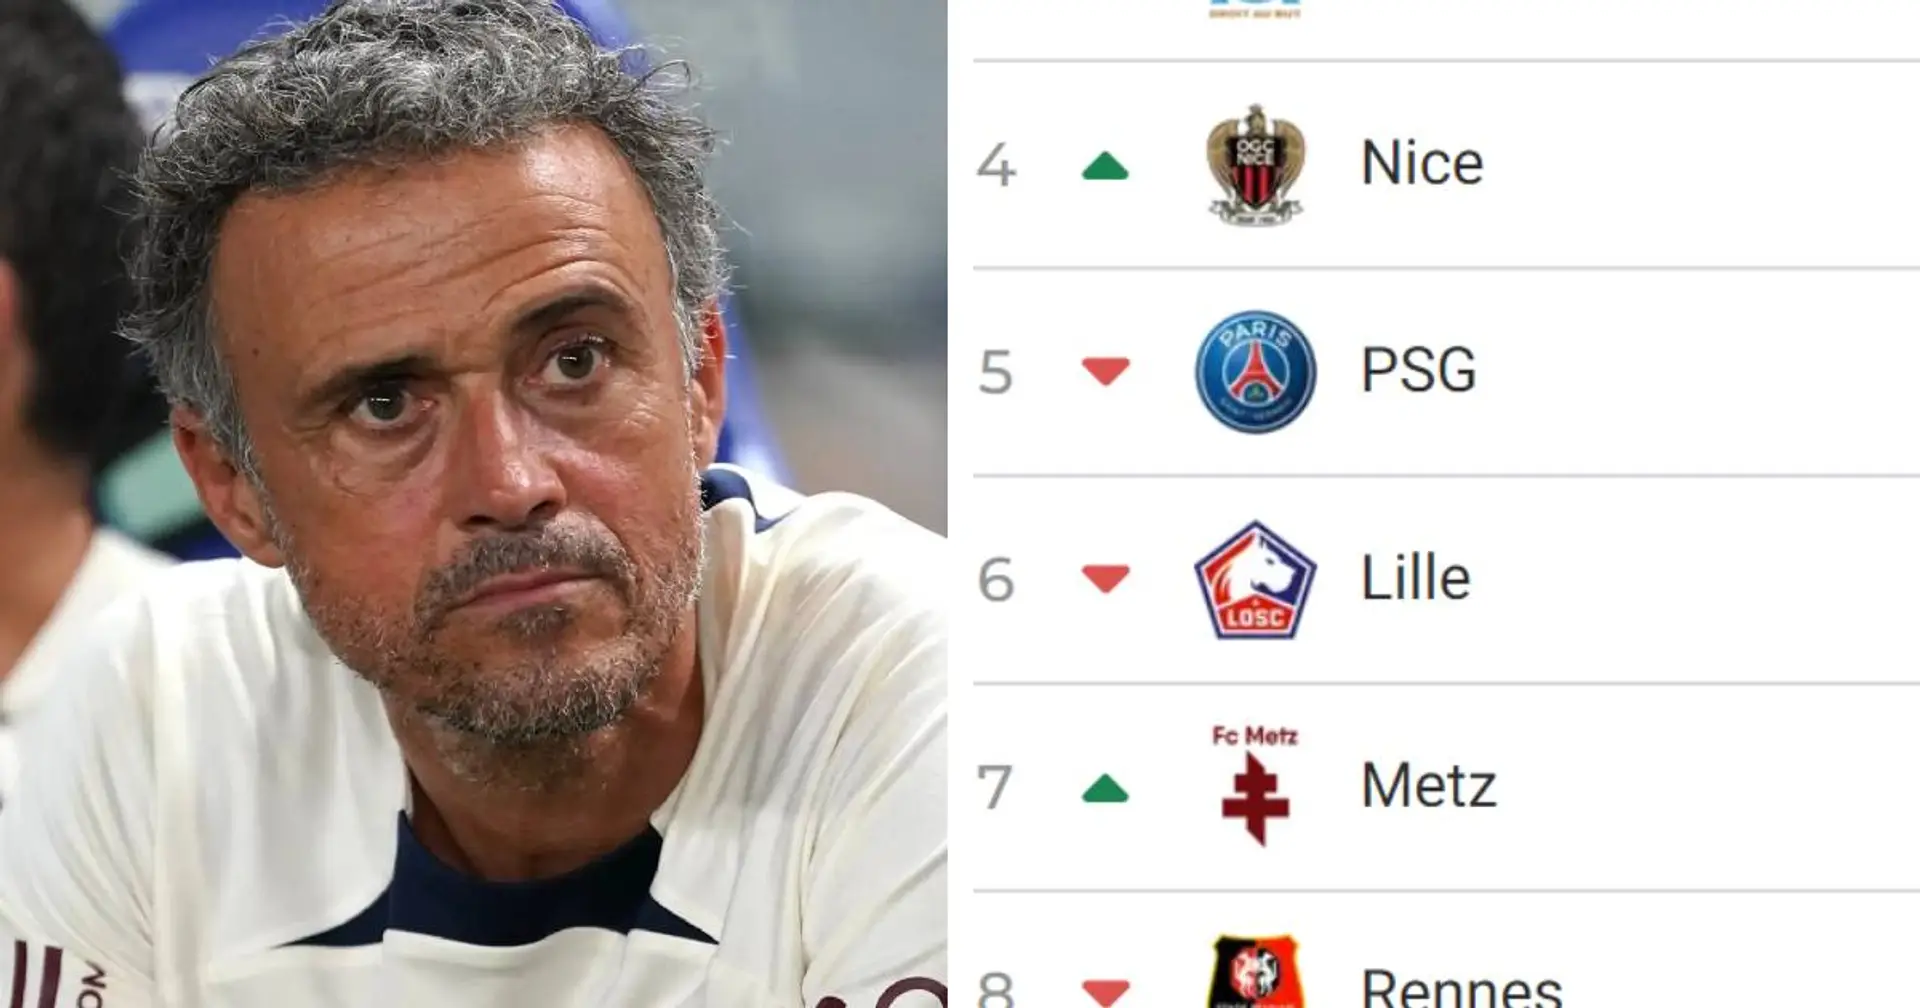 Le PSG à trois points du leader : à quoi ressemble le classement de la Ligue 1 après la 5e journée